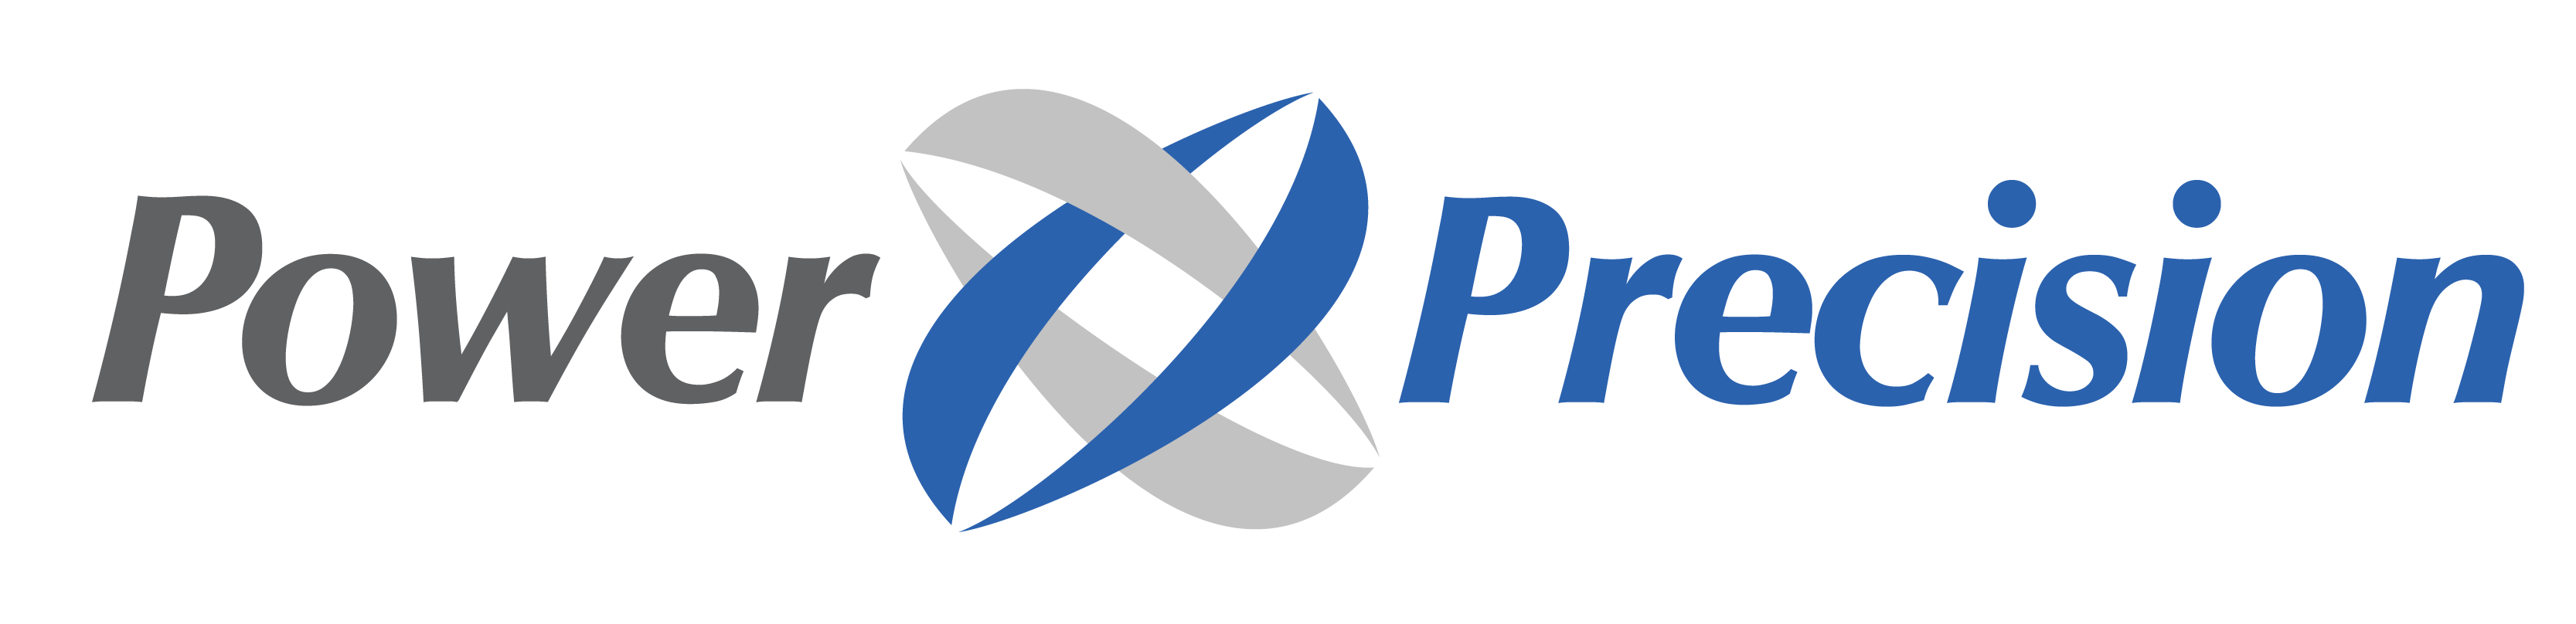 Power Precision Inc.Logo